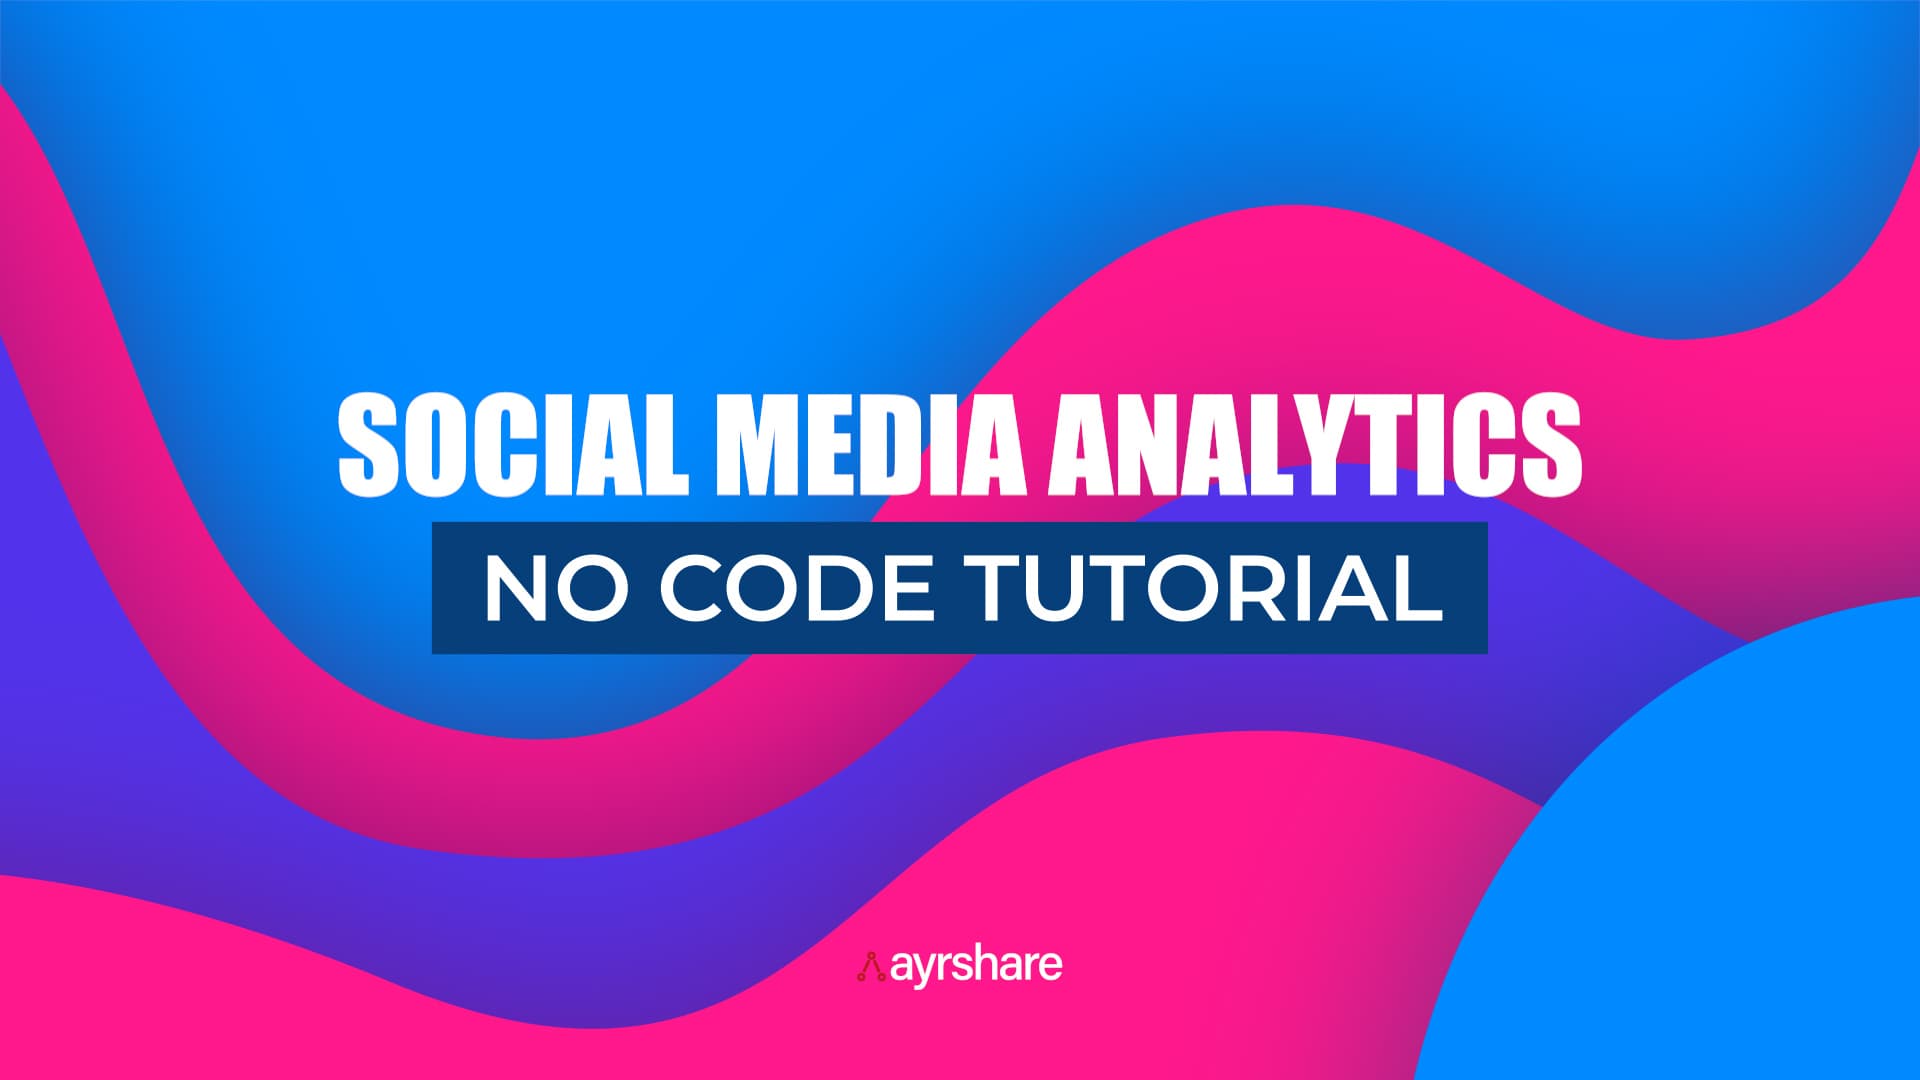 Social media analytics no code tutorial.